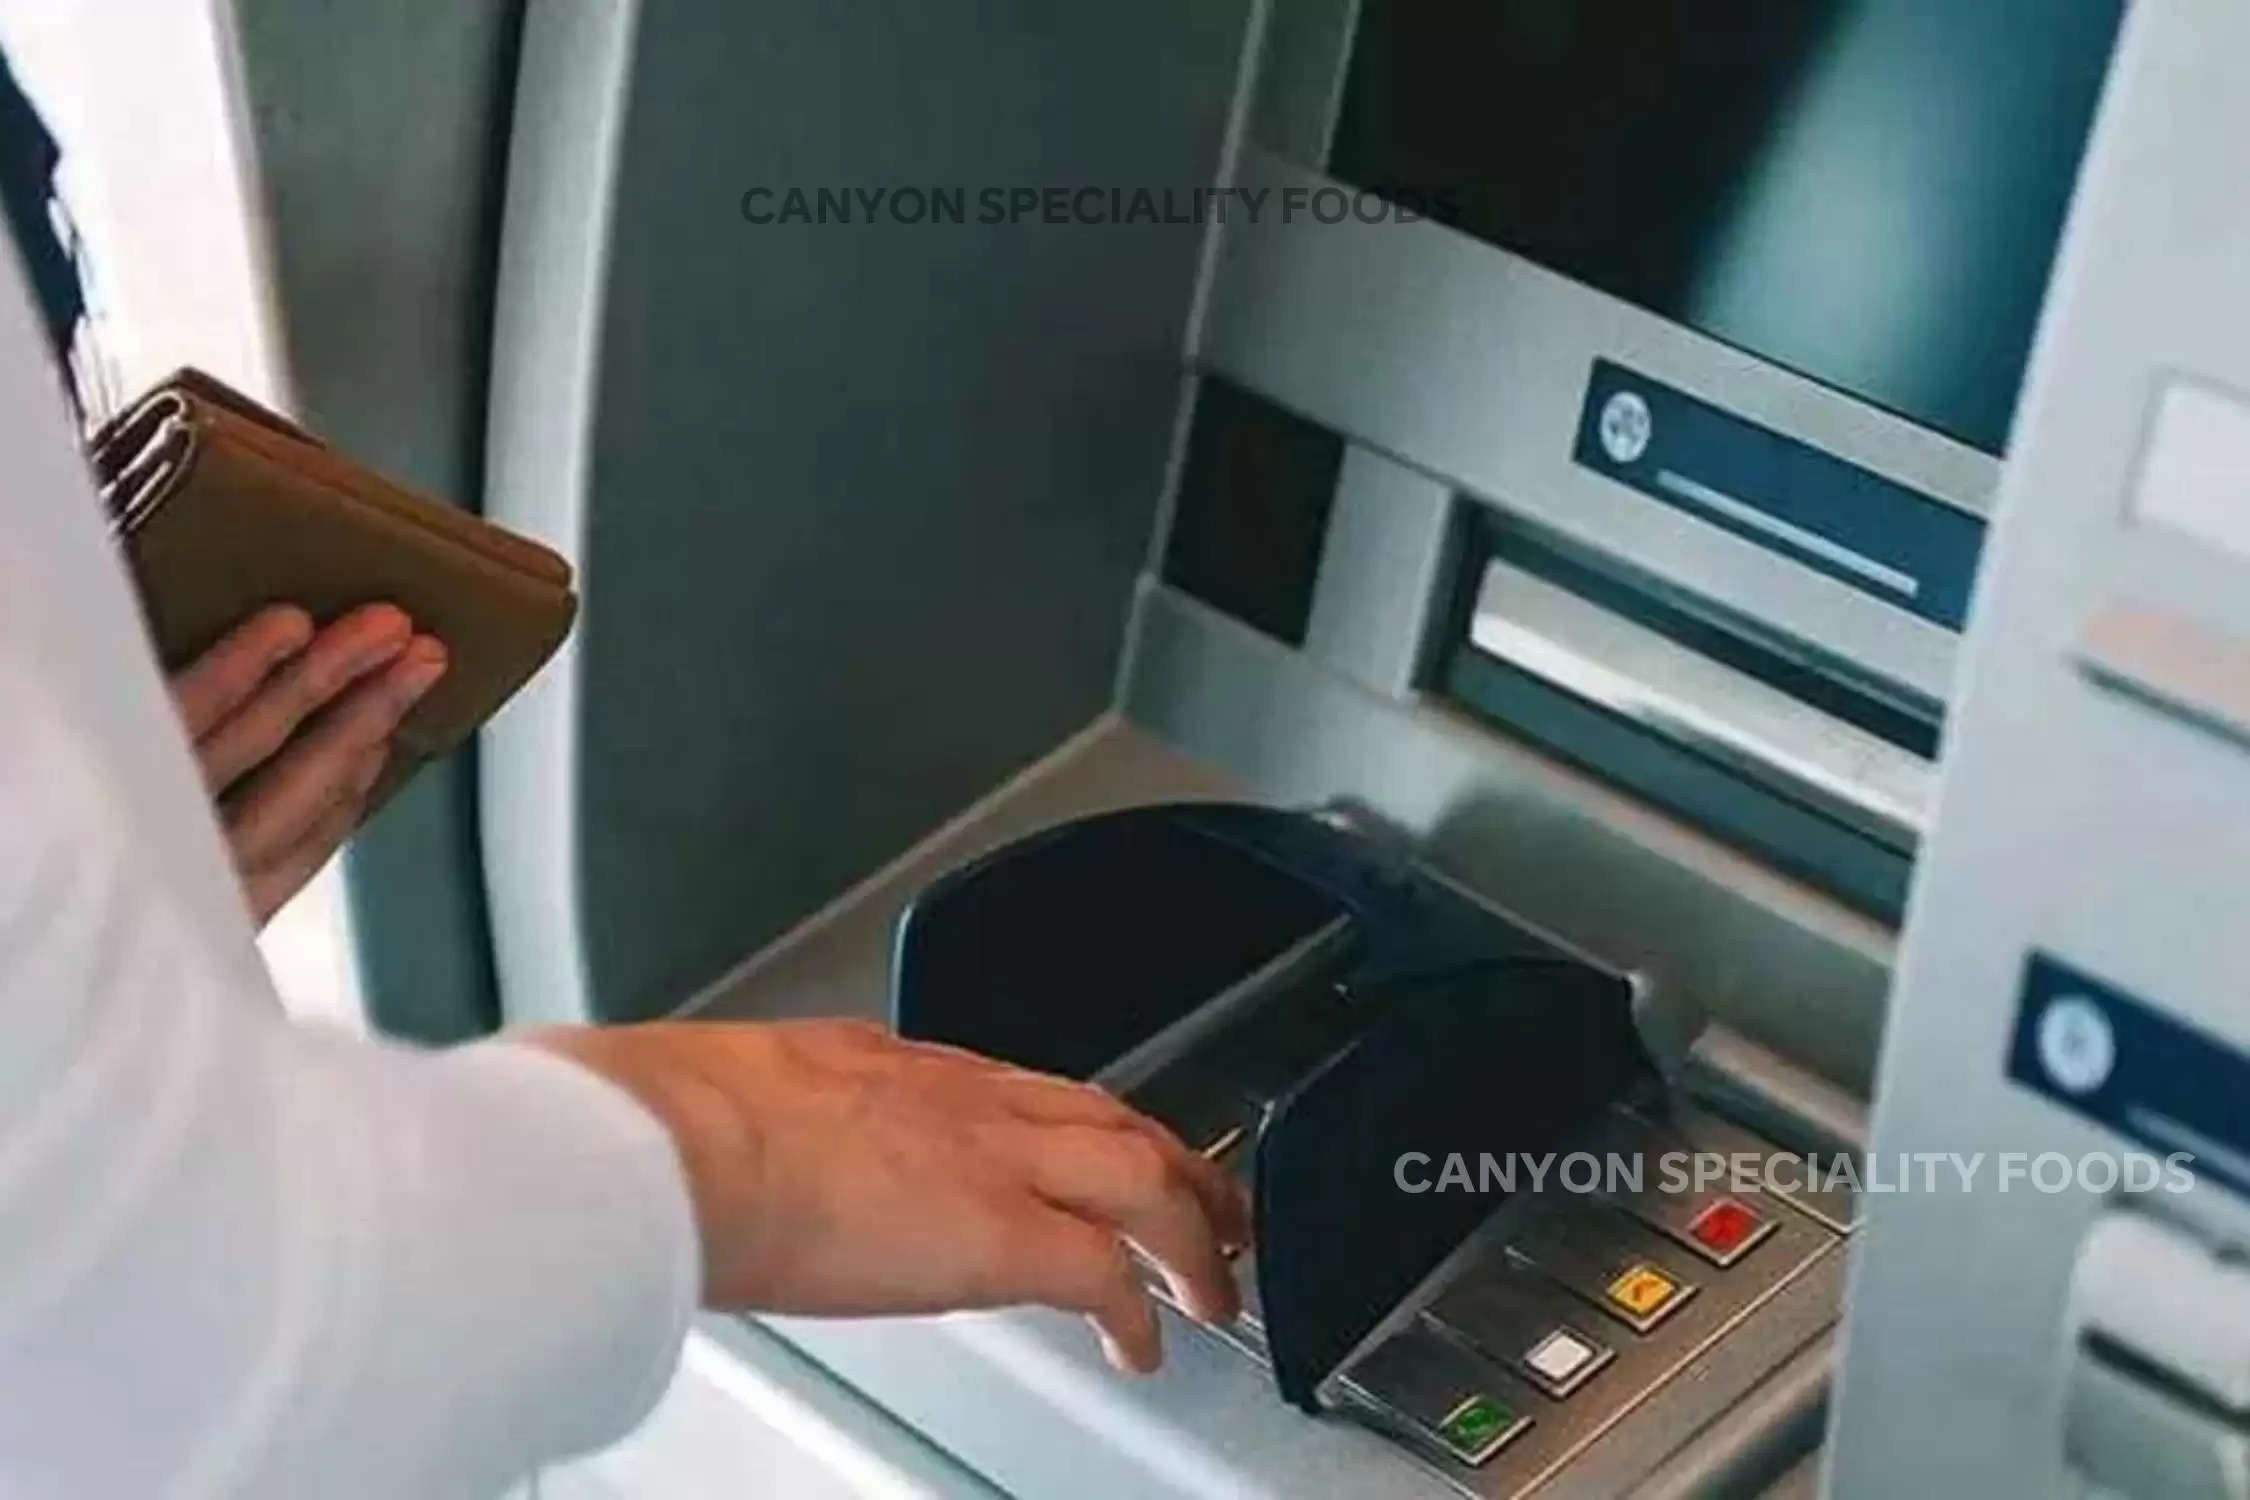 ATM से पैसे निकलते समय, इन 5 बातों का रखें ध्यान, वरना खाली होगा बैंक अकाउंट